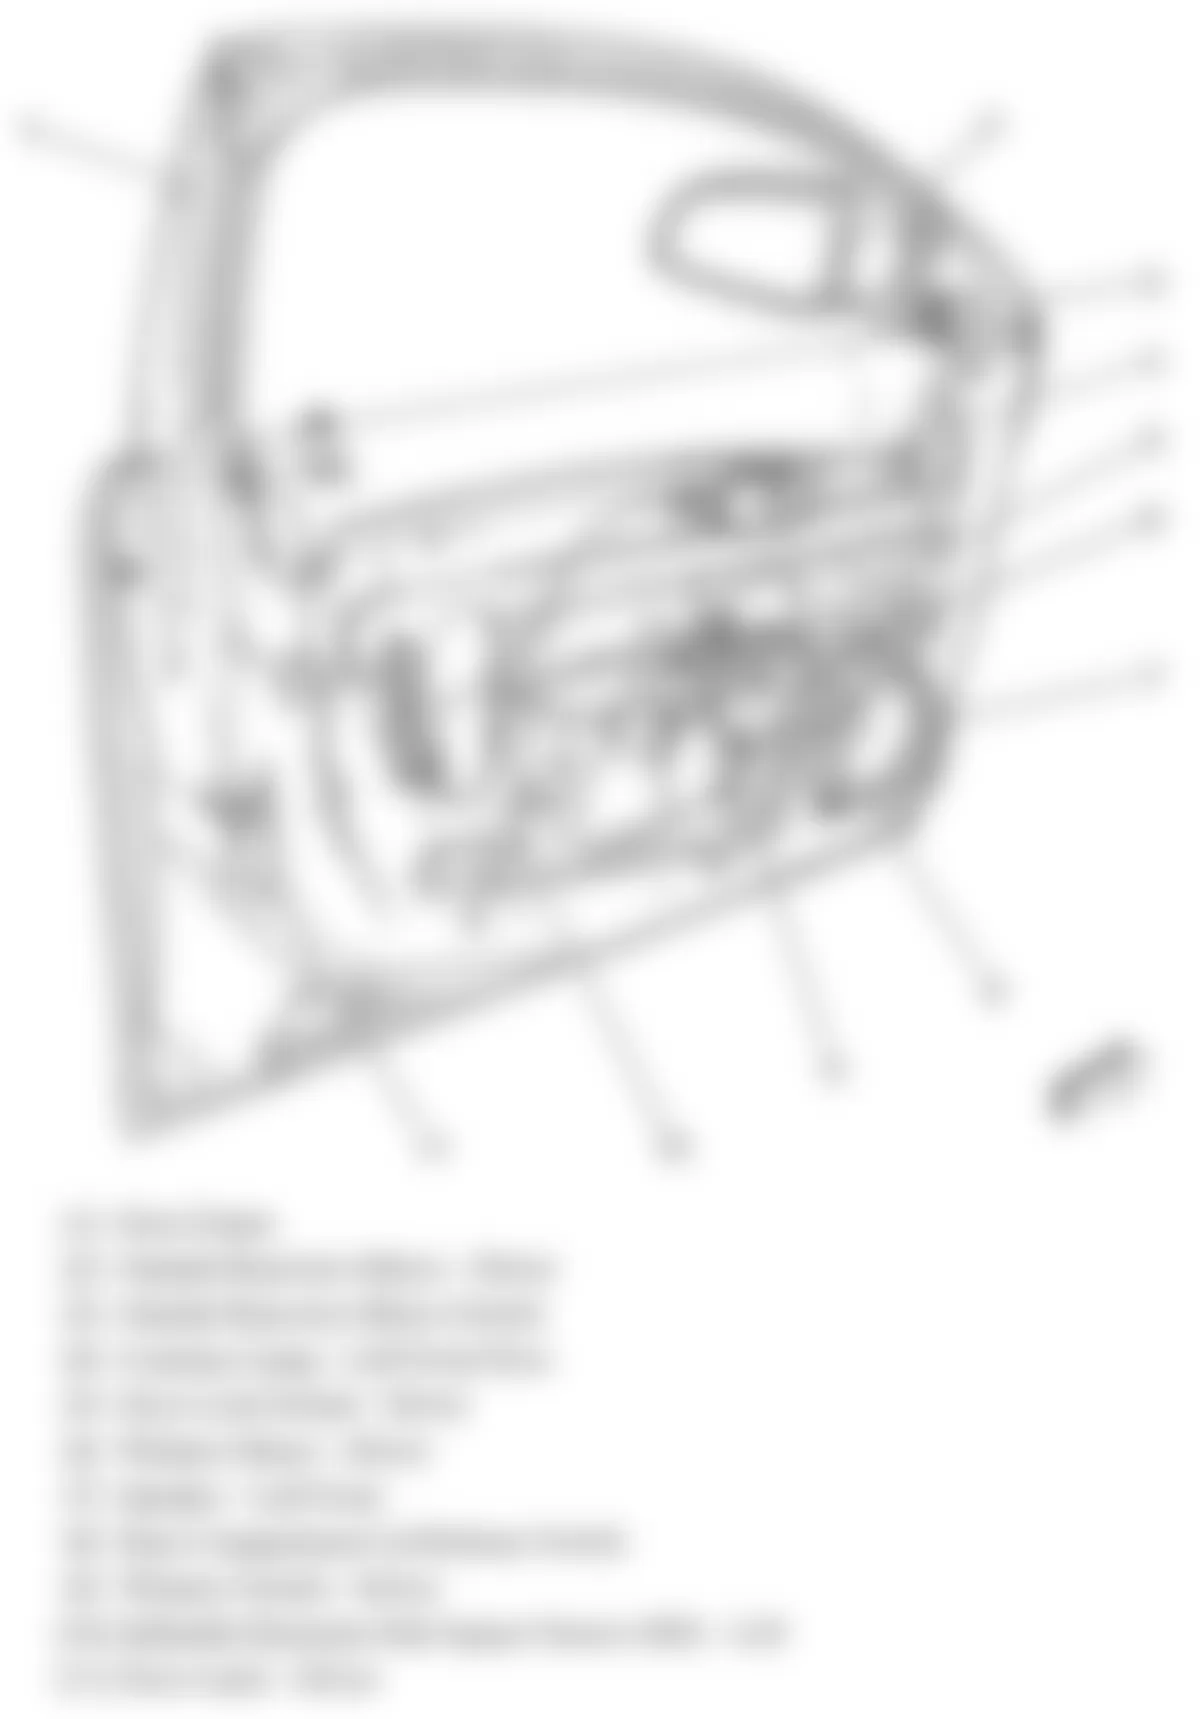 Chevrolet Malibu LTZ 2010 - Component Locations -  Drivers Door